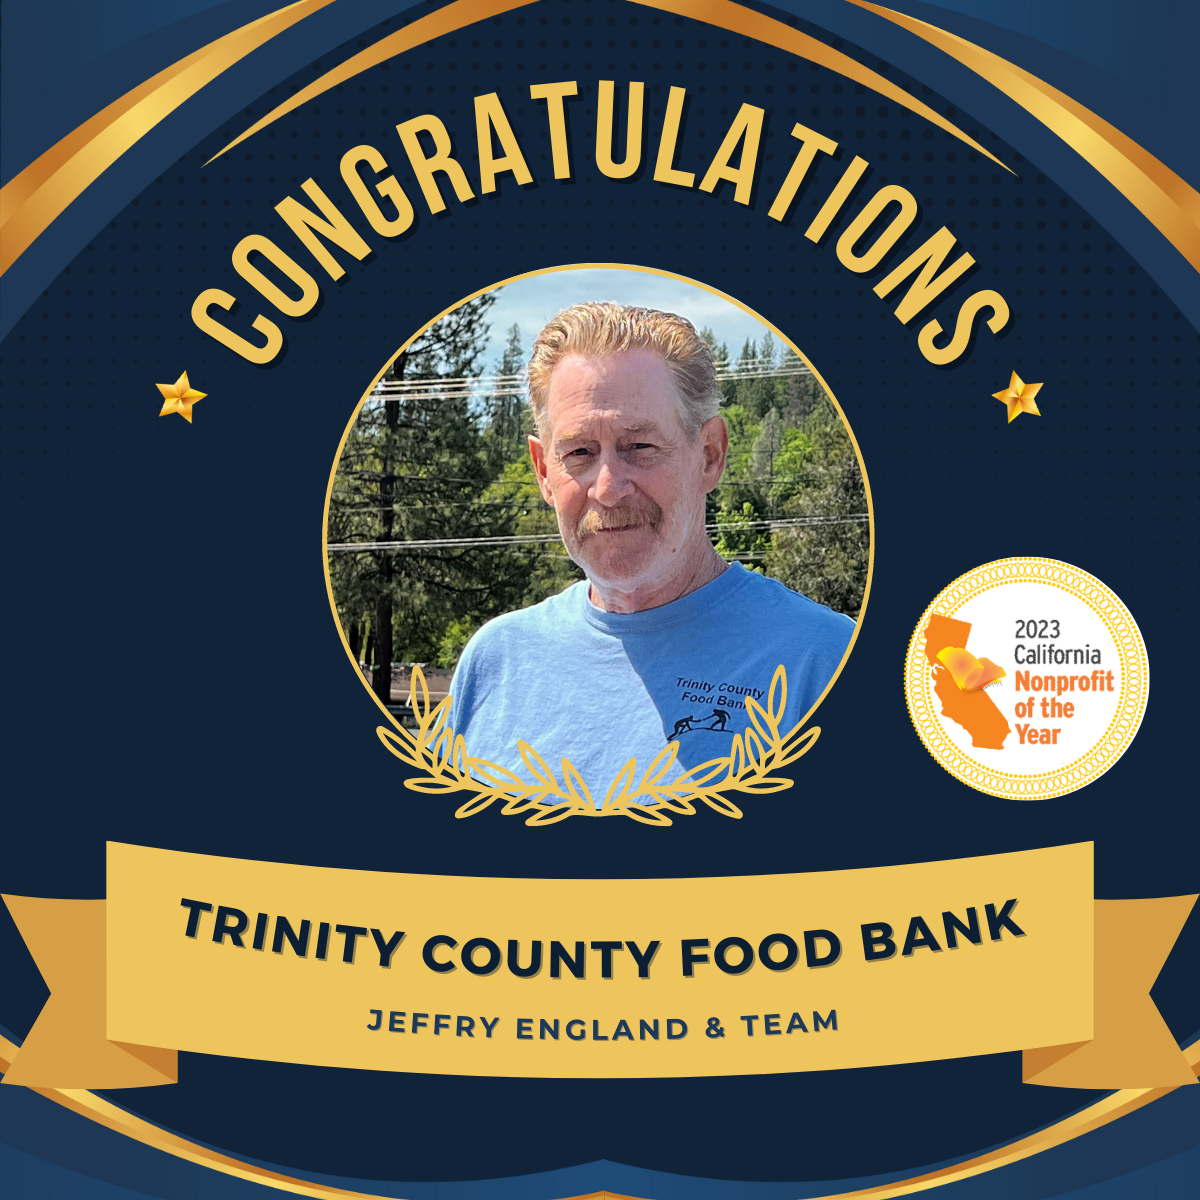 Trinity County Food Bank Awarded